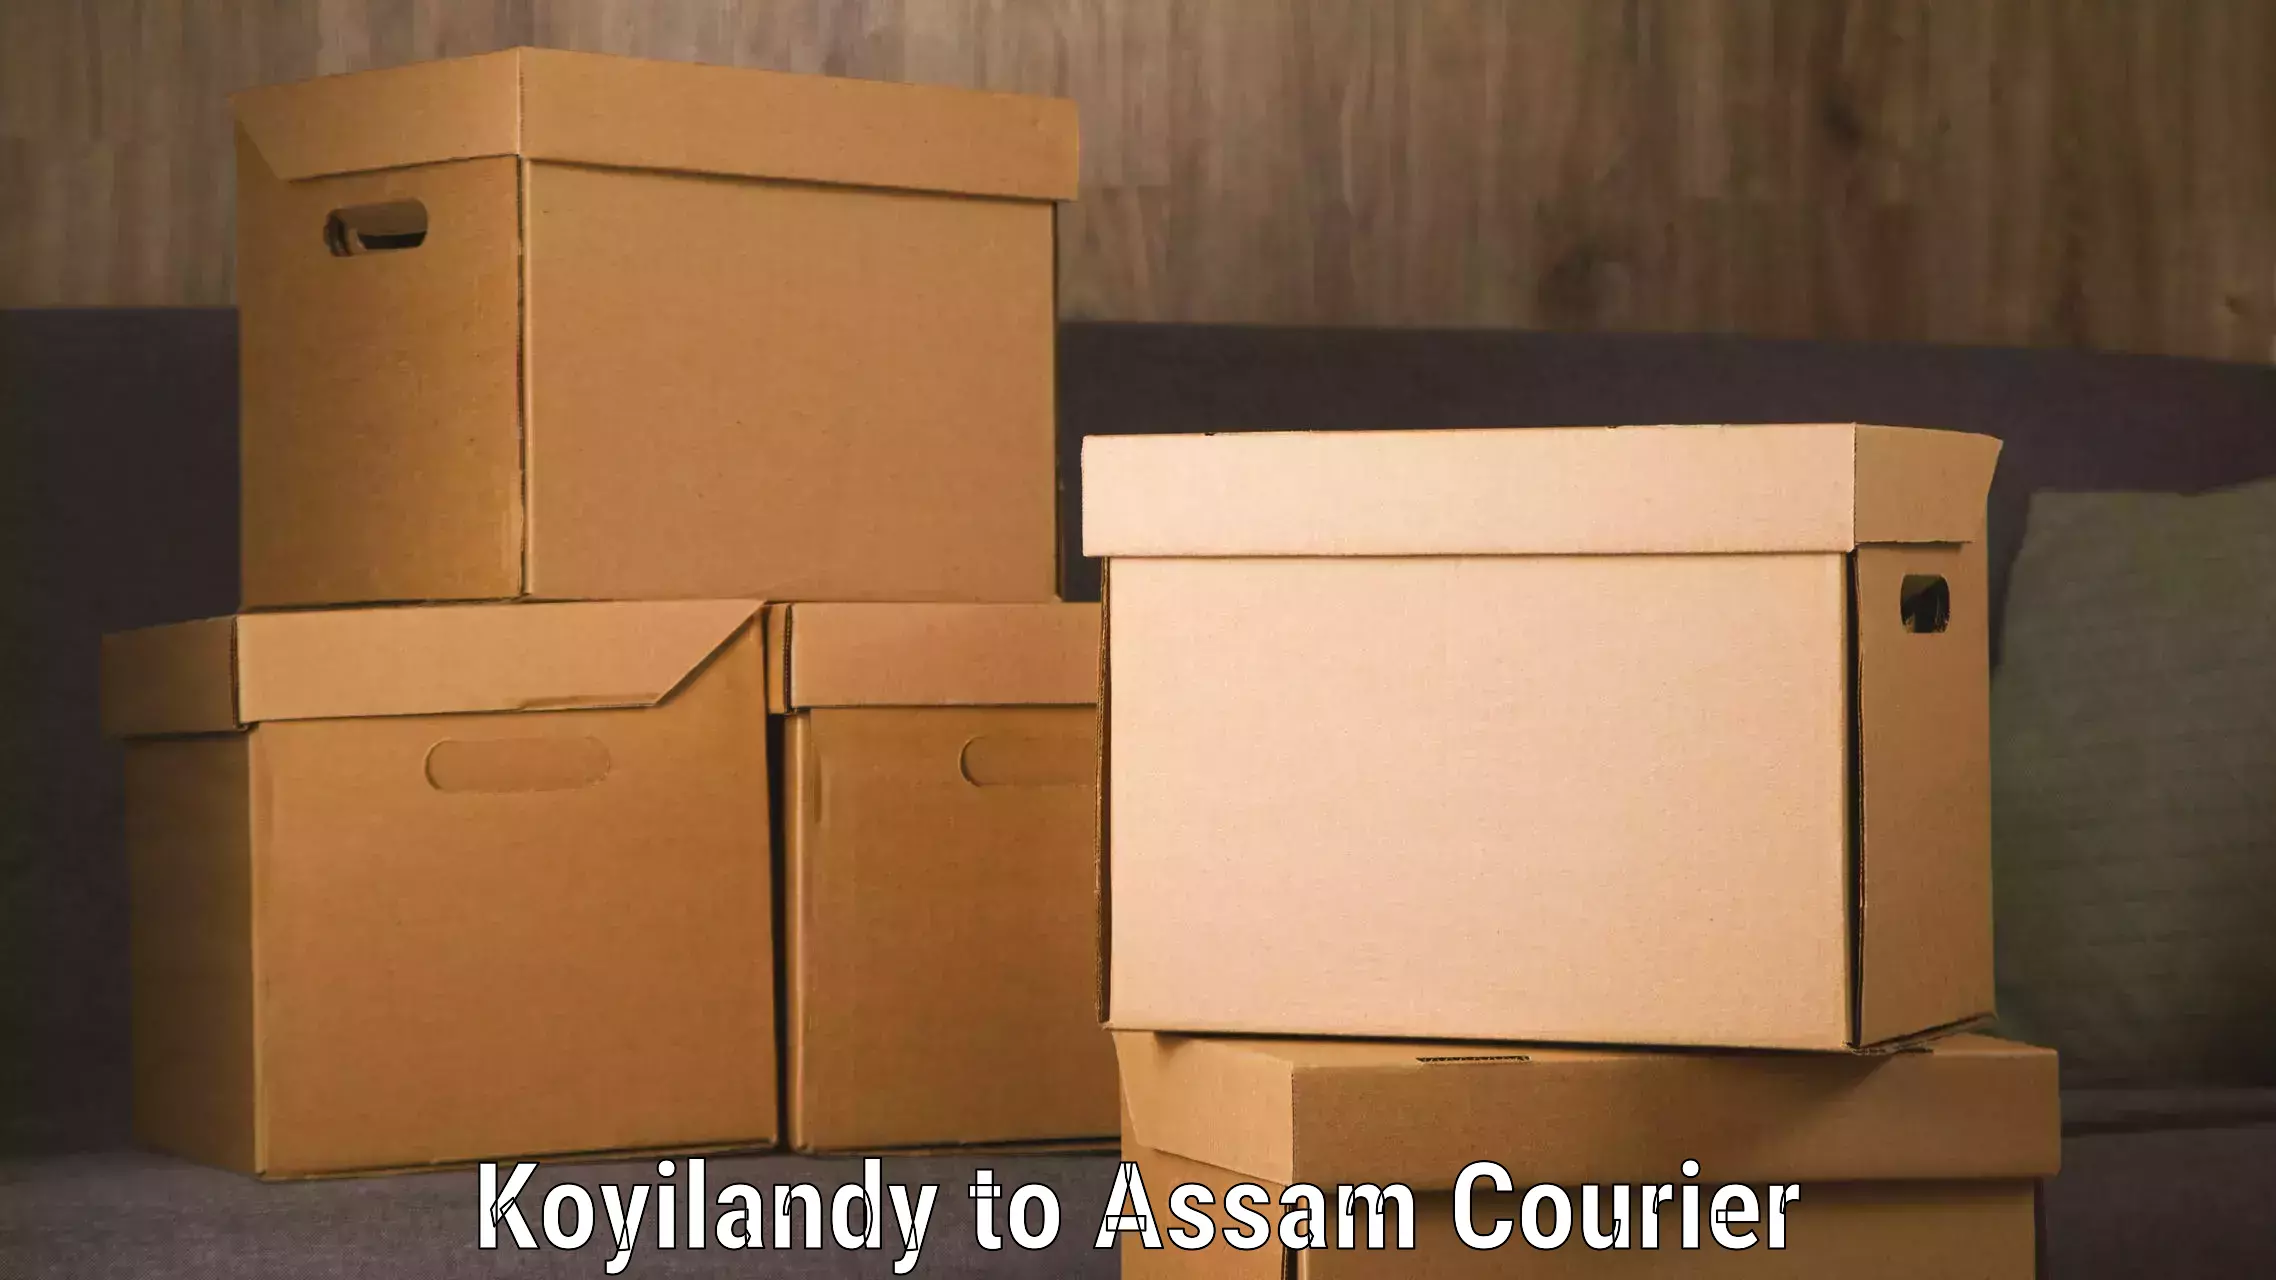 Professional courier handling in Koyilandy to Dhakuakhana